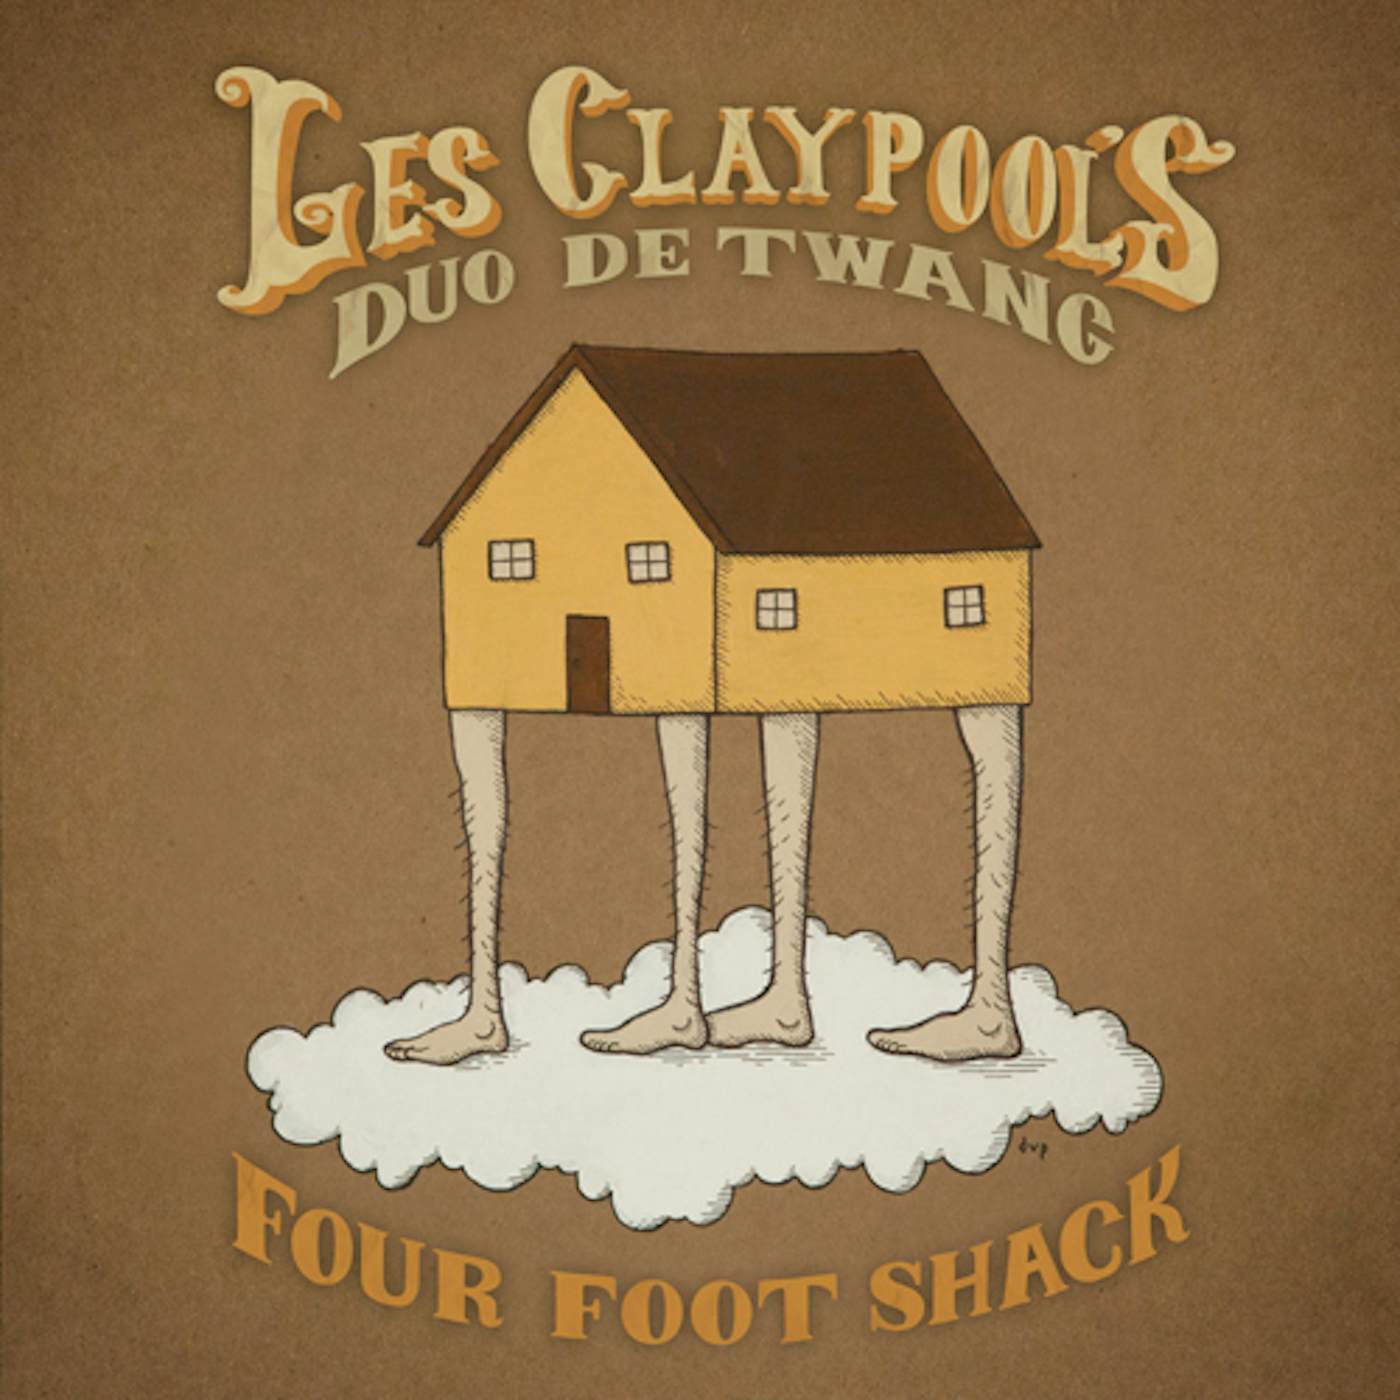 Les Claypool's Duo De Twang - Four Foot Shack CD